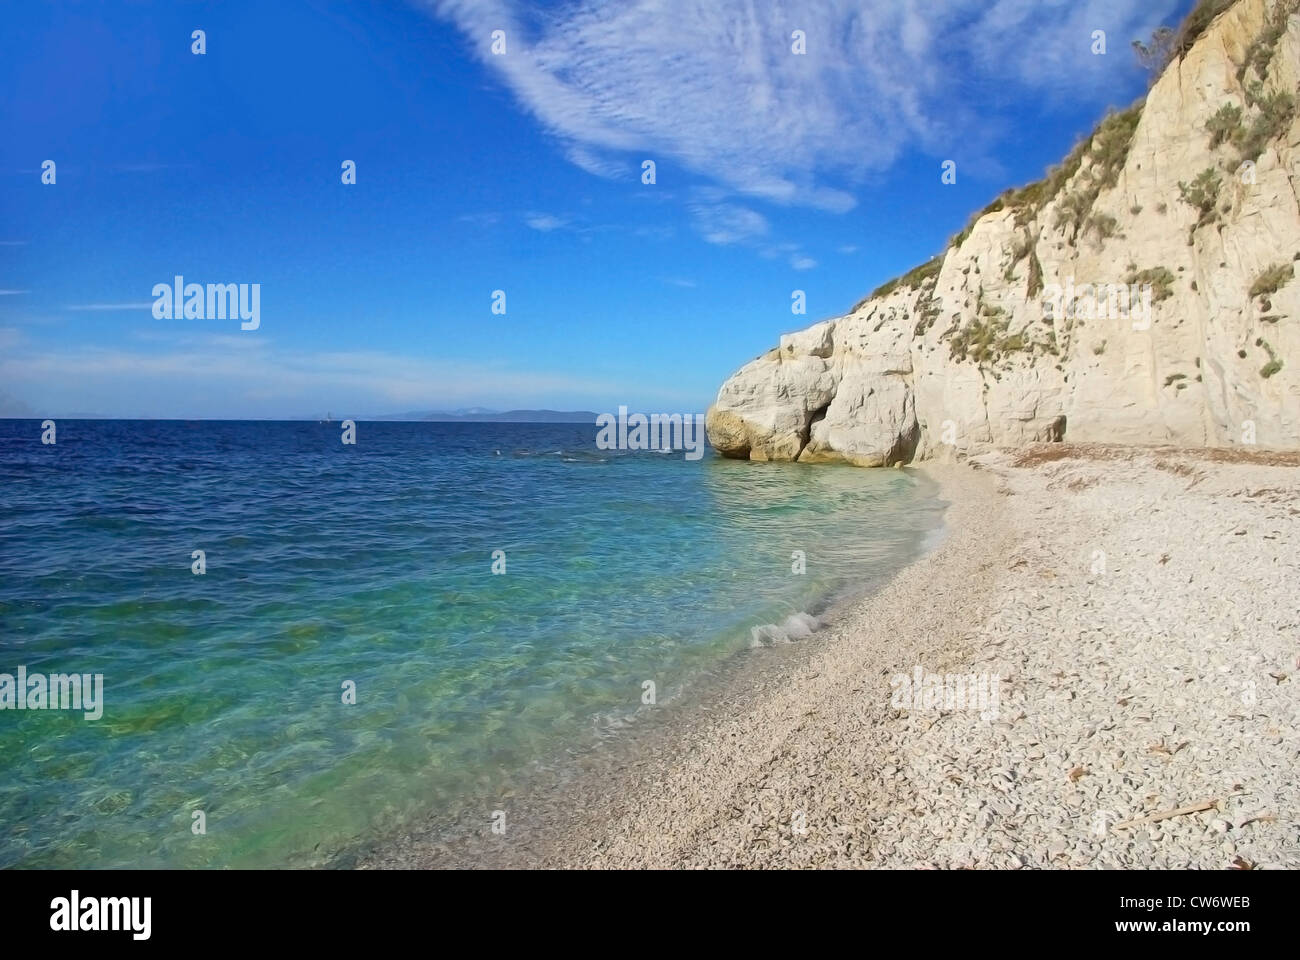 Strand mit weißen Kieselsteinen unter einem hohen weißen Felsen, vor einem schönen Wasser (Capo Bianco, Insel Elba, Italien) Stockfoto